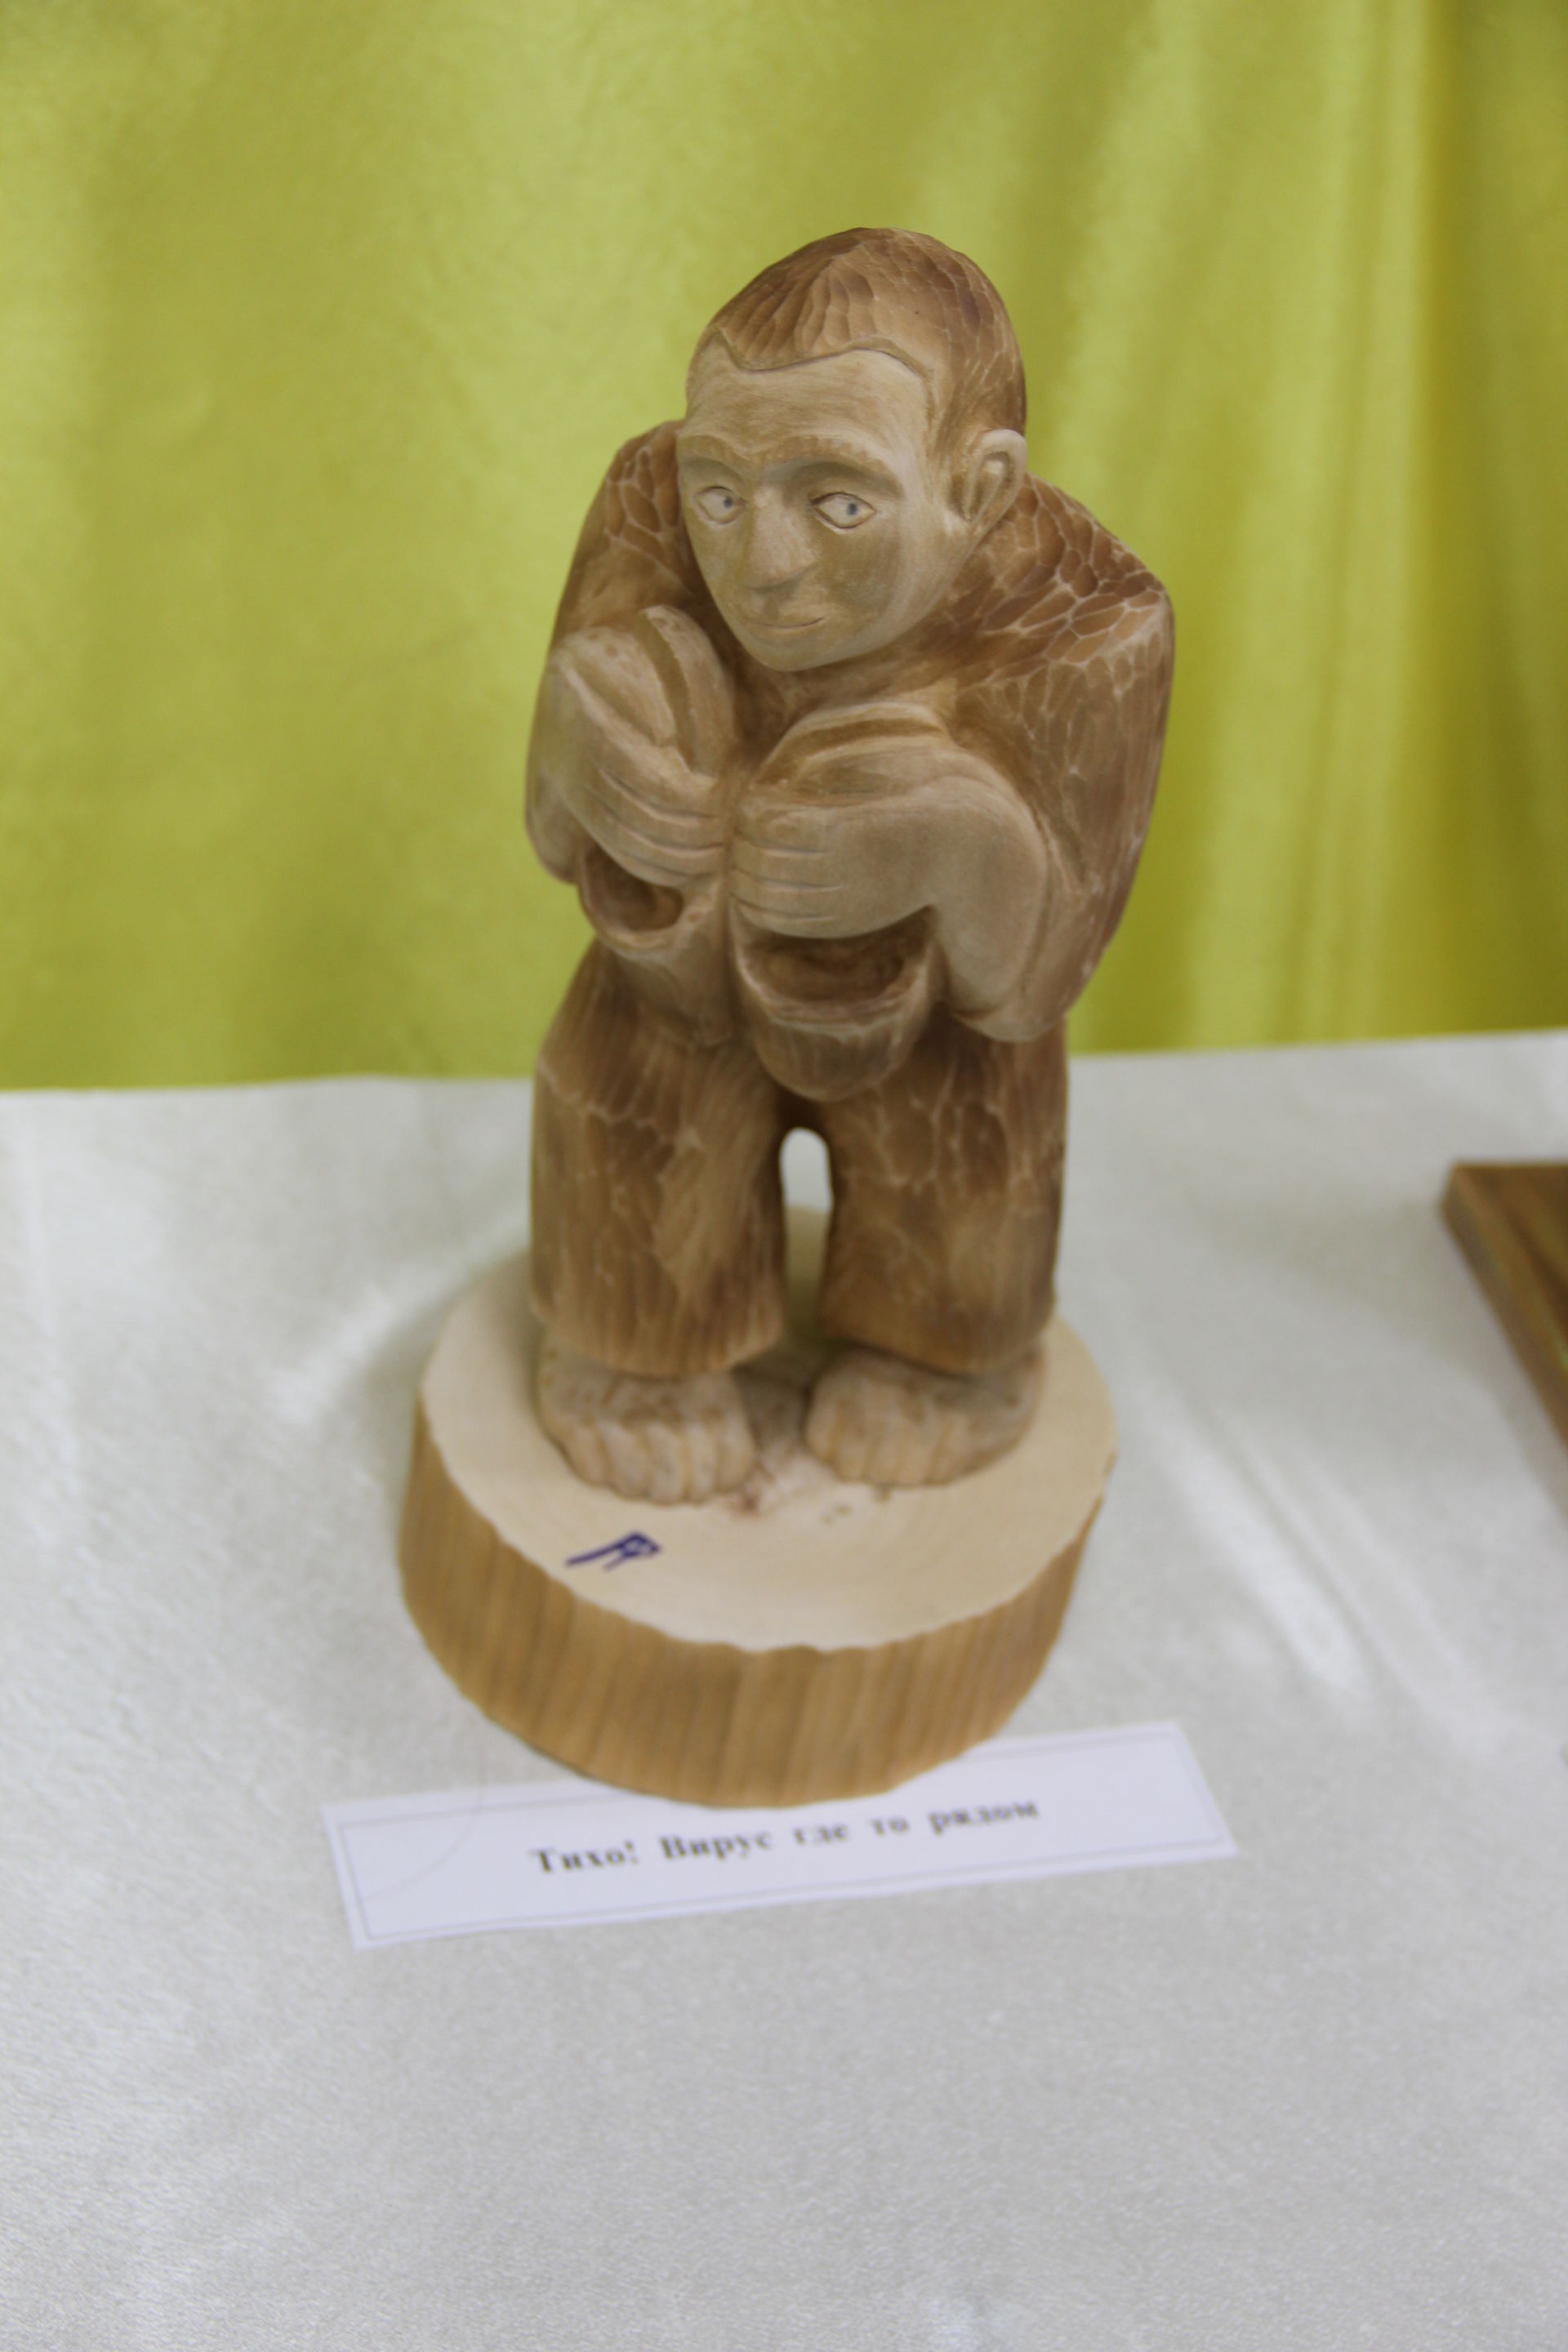 В центральной библиотеке состоялось открытие выставки заинского скульптора по дереву Равиля Ахатова